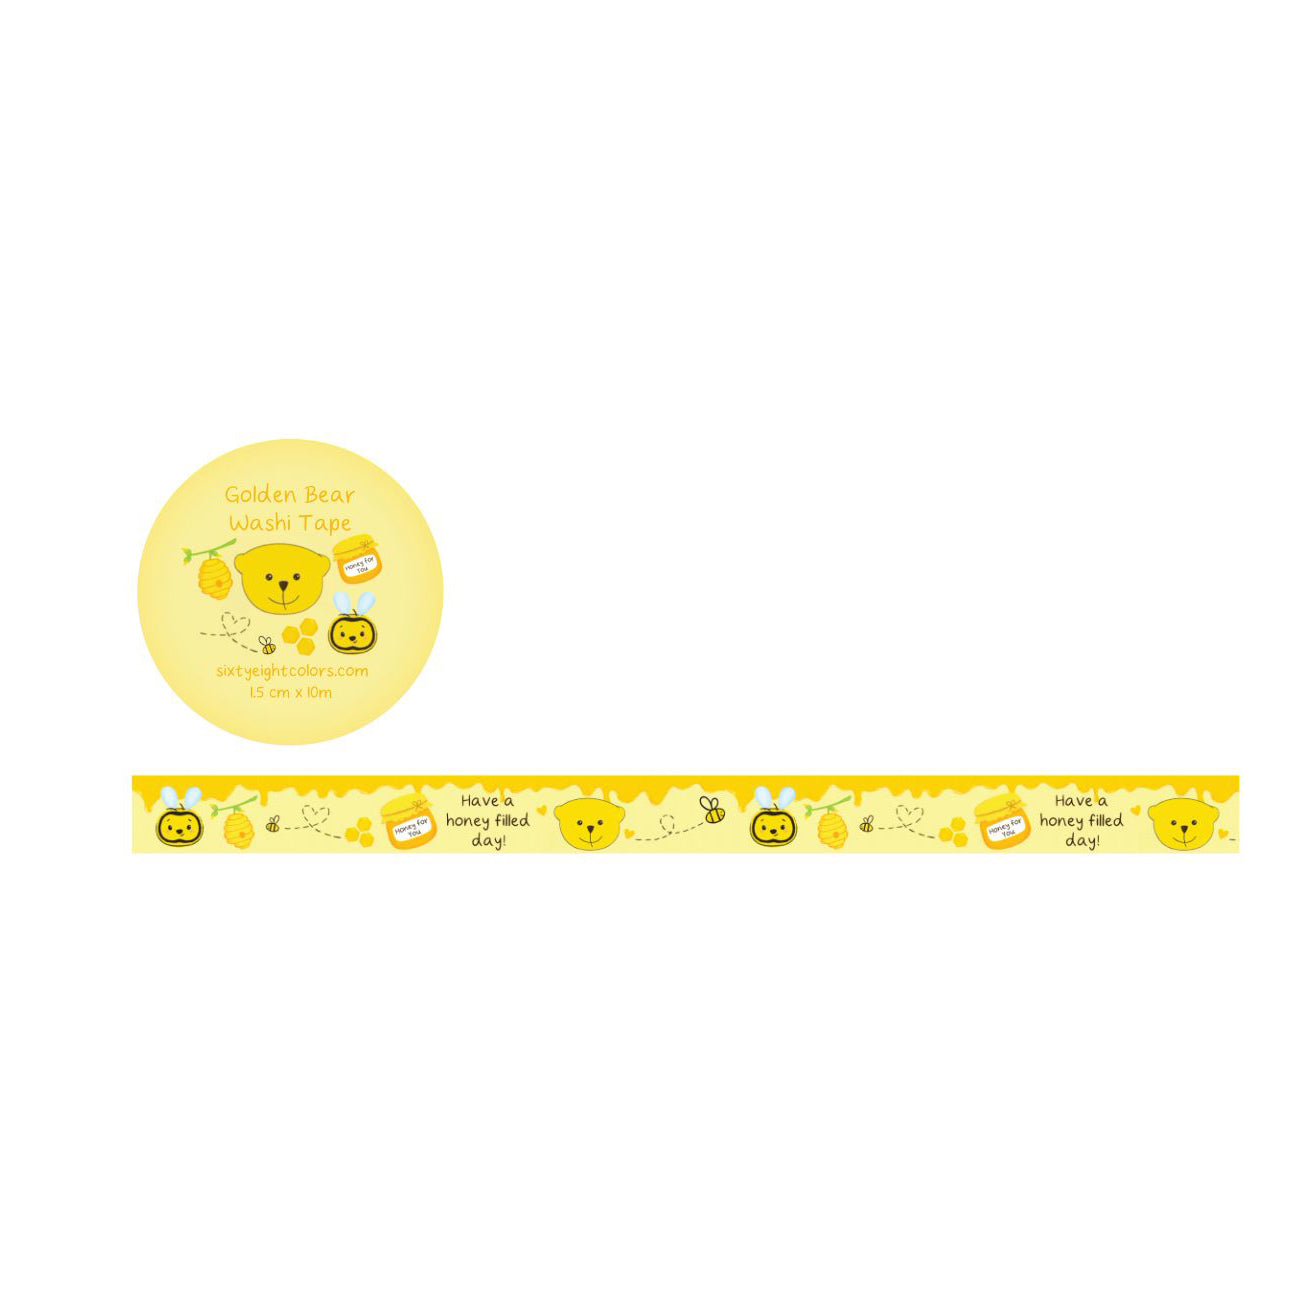 Golden Bear Washi Tape